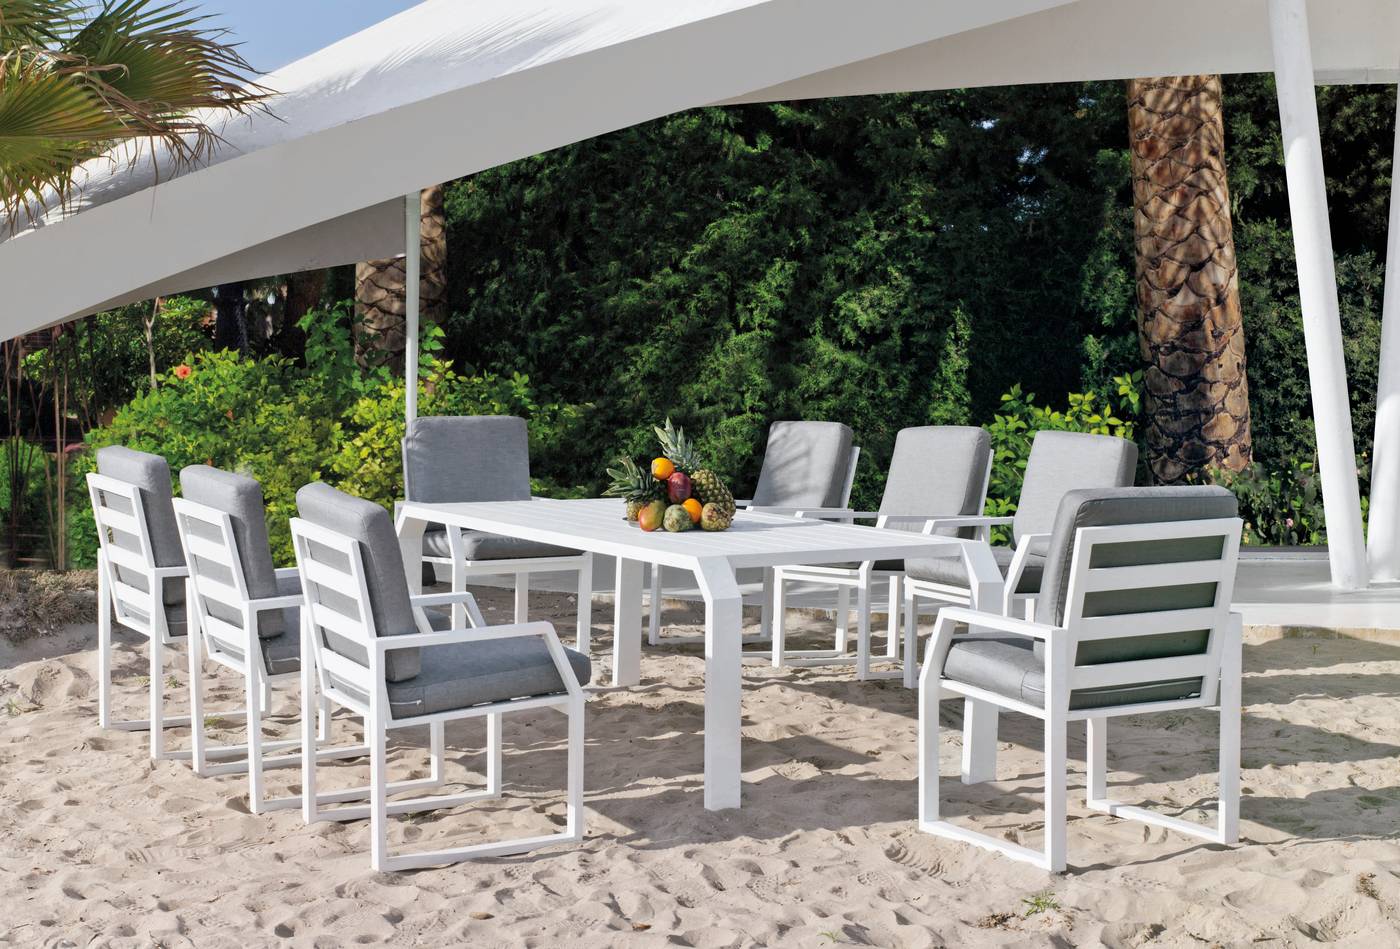 Conjunto de aluminio luxe: Mesa de comedor de 240 cm. + 8 sillones + cojines. Disponible en color blanco, antracita y champagne.